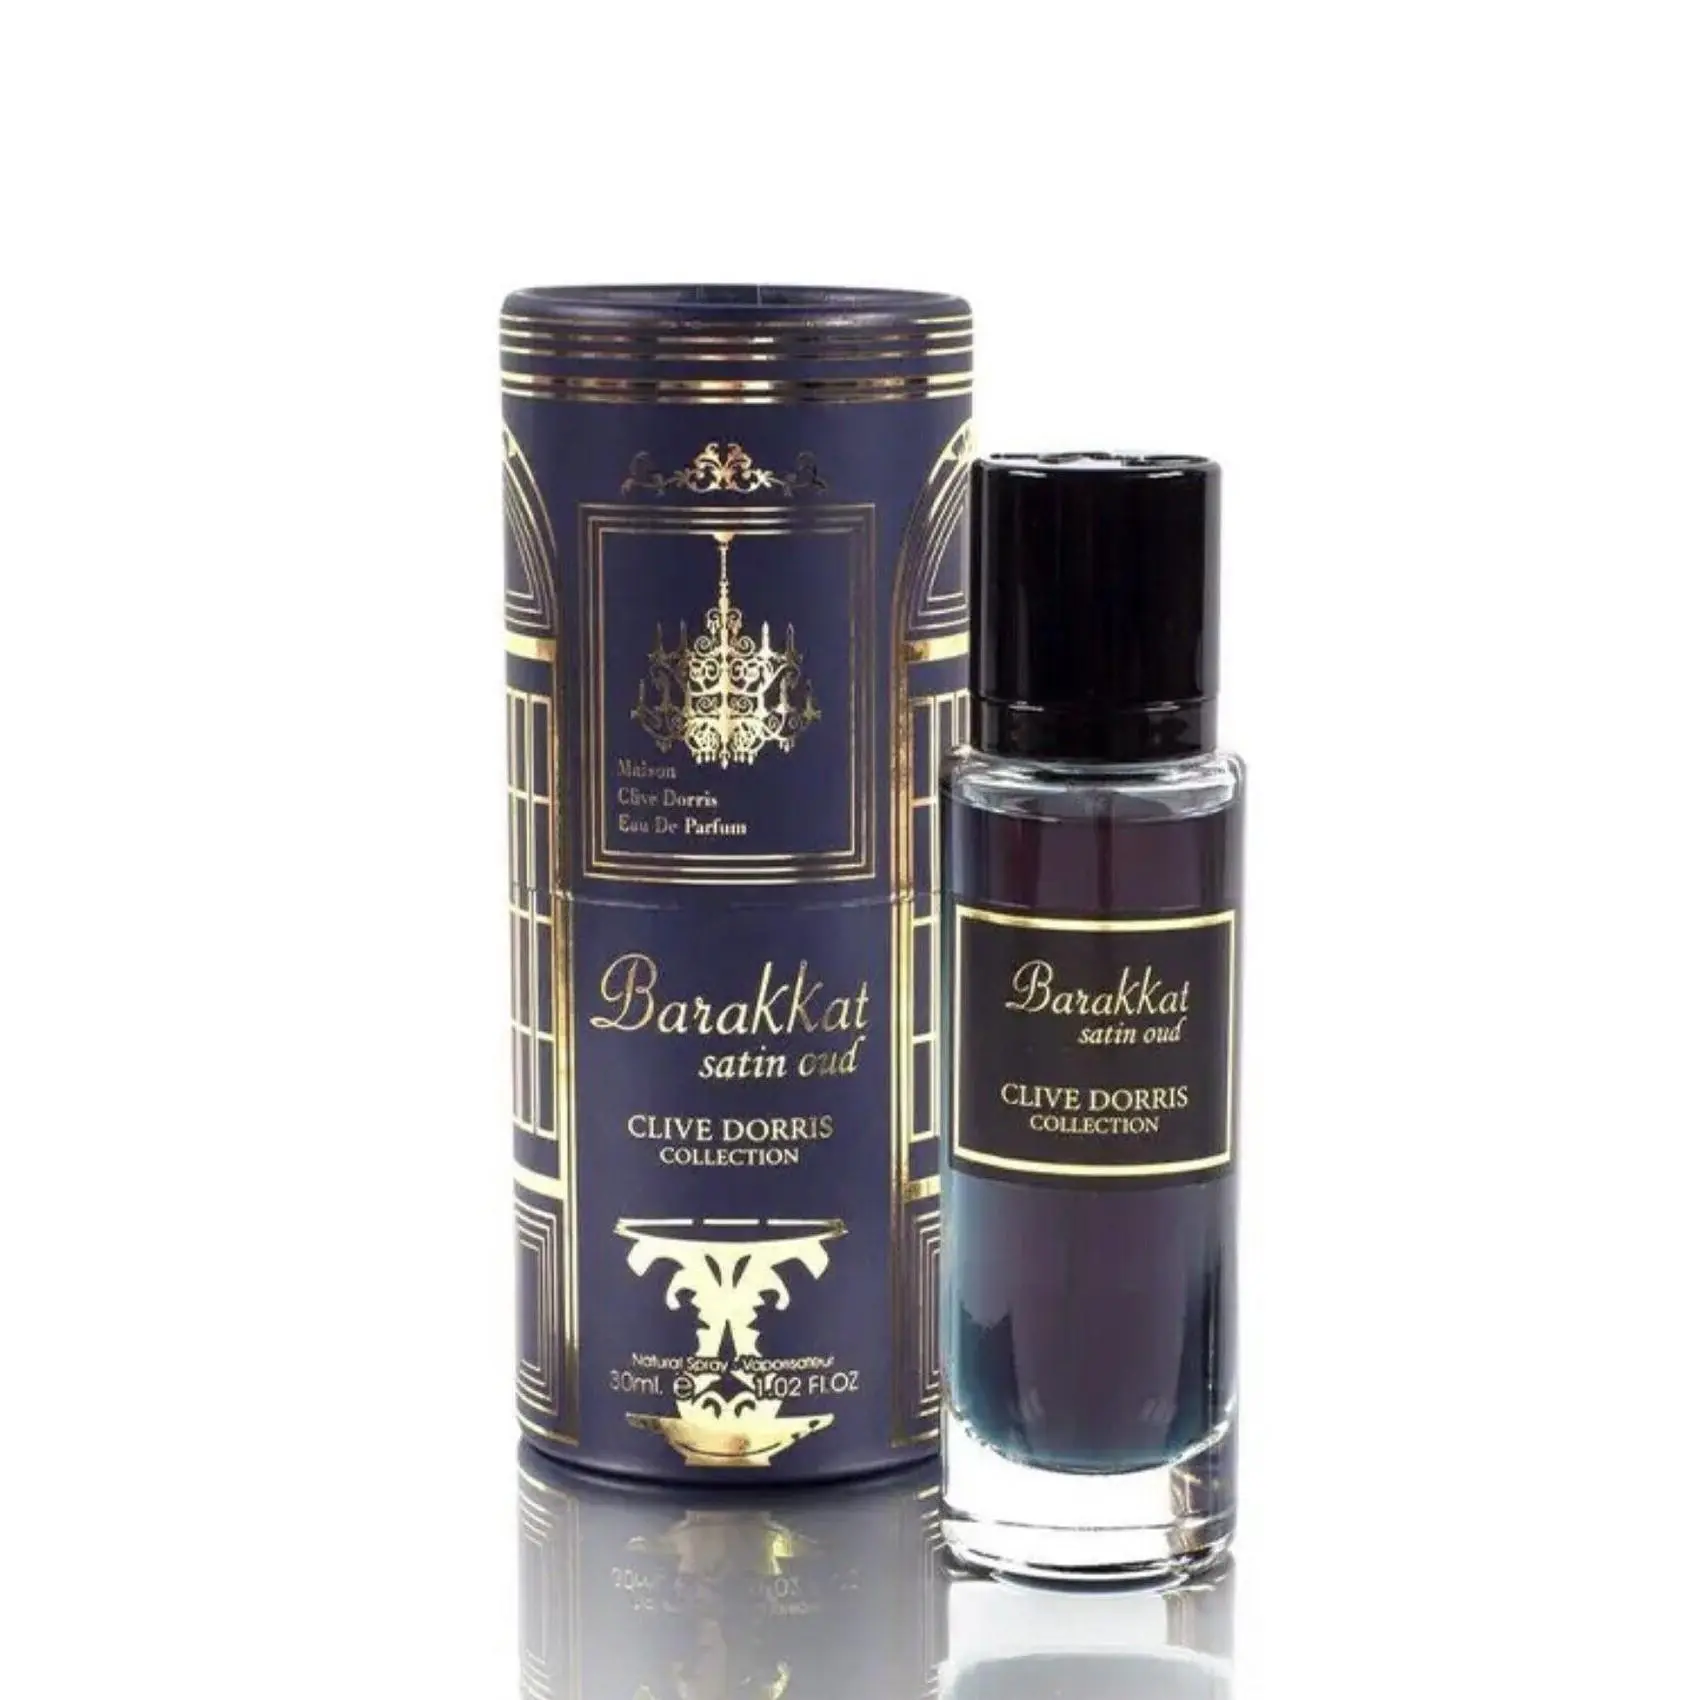 Barakkat Satin Oud (Clive Dorris Collection) 30Ml Travel Size Perfume Eau De Parfum By Fragrance World